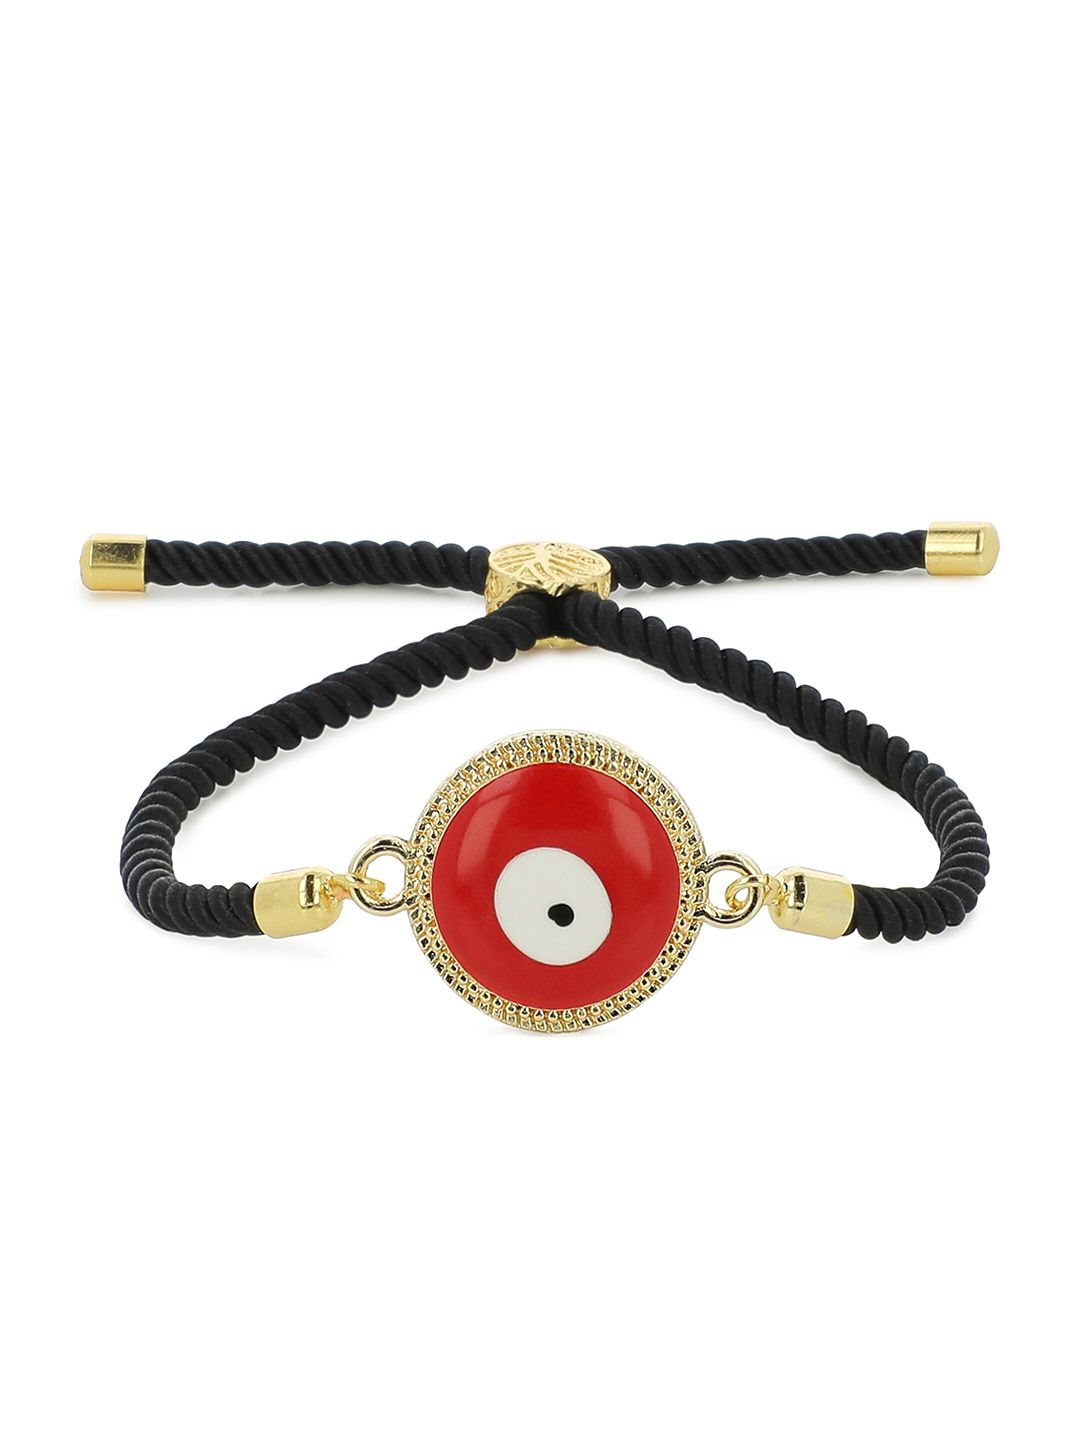 EL REGALO Unisex Red & Black Evil Eye Charm Bracelet Price in India